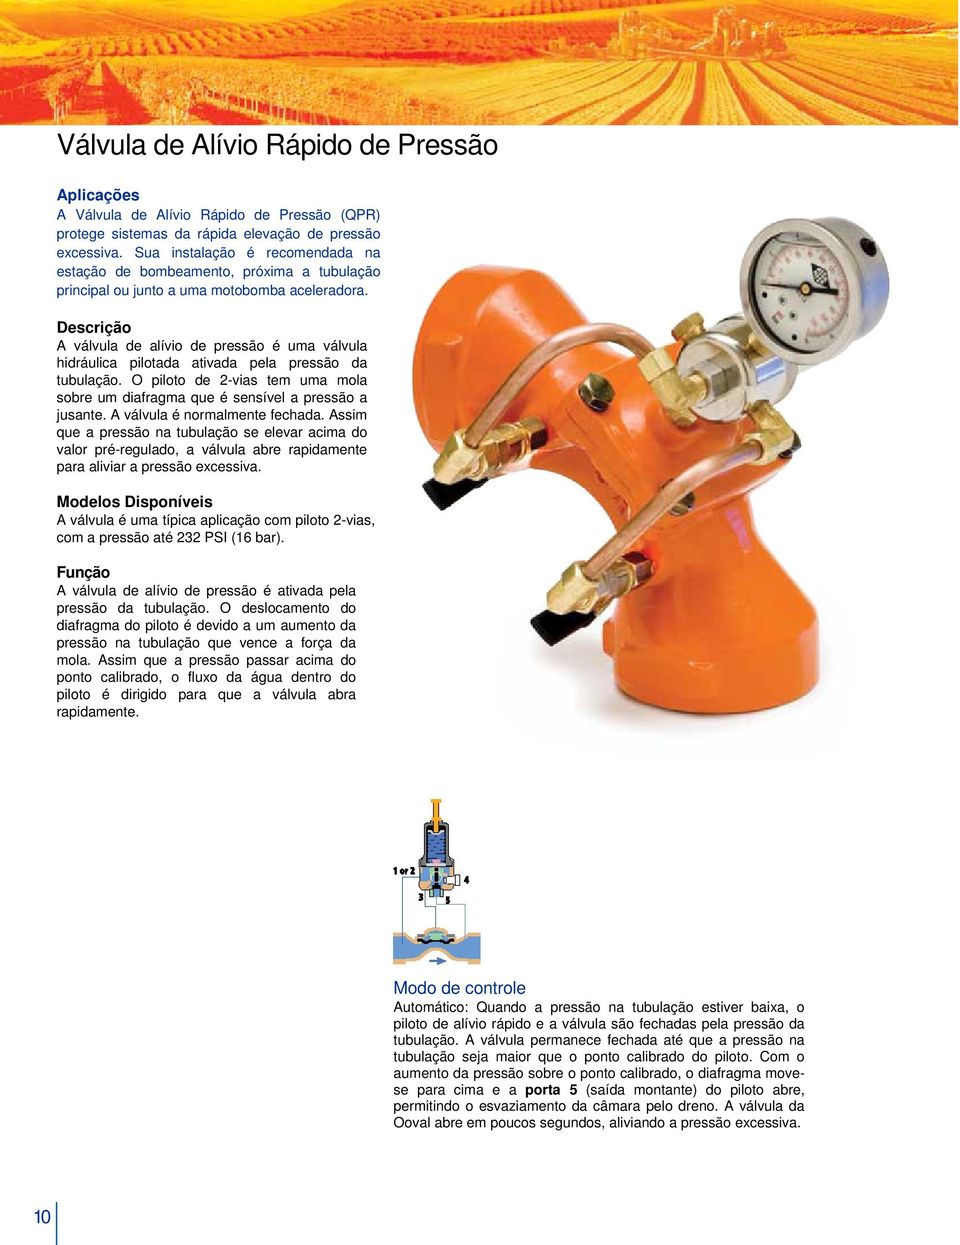 Descrição A válvula de alívio de pressão é uma válvula hidráulica pilotada ativada pela pressão da tubulação. O piloto de 2-vias tem uma mola sobre um diafragma que é sensível a pressão a jusante.